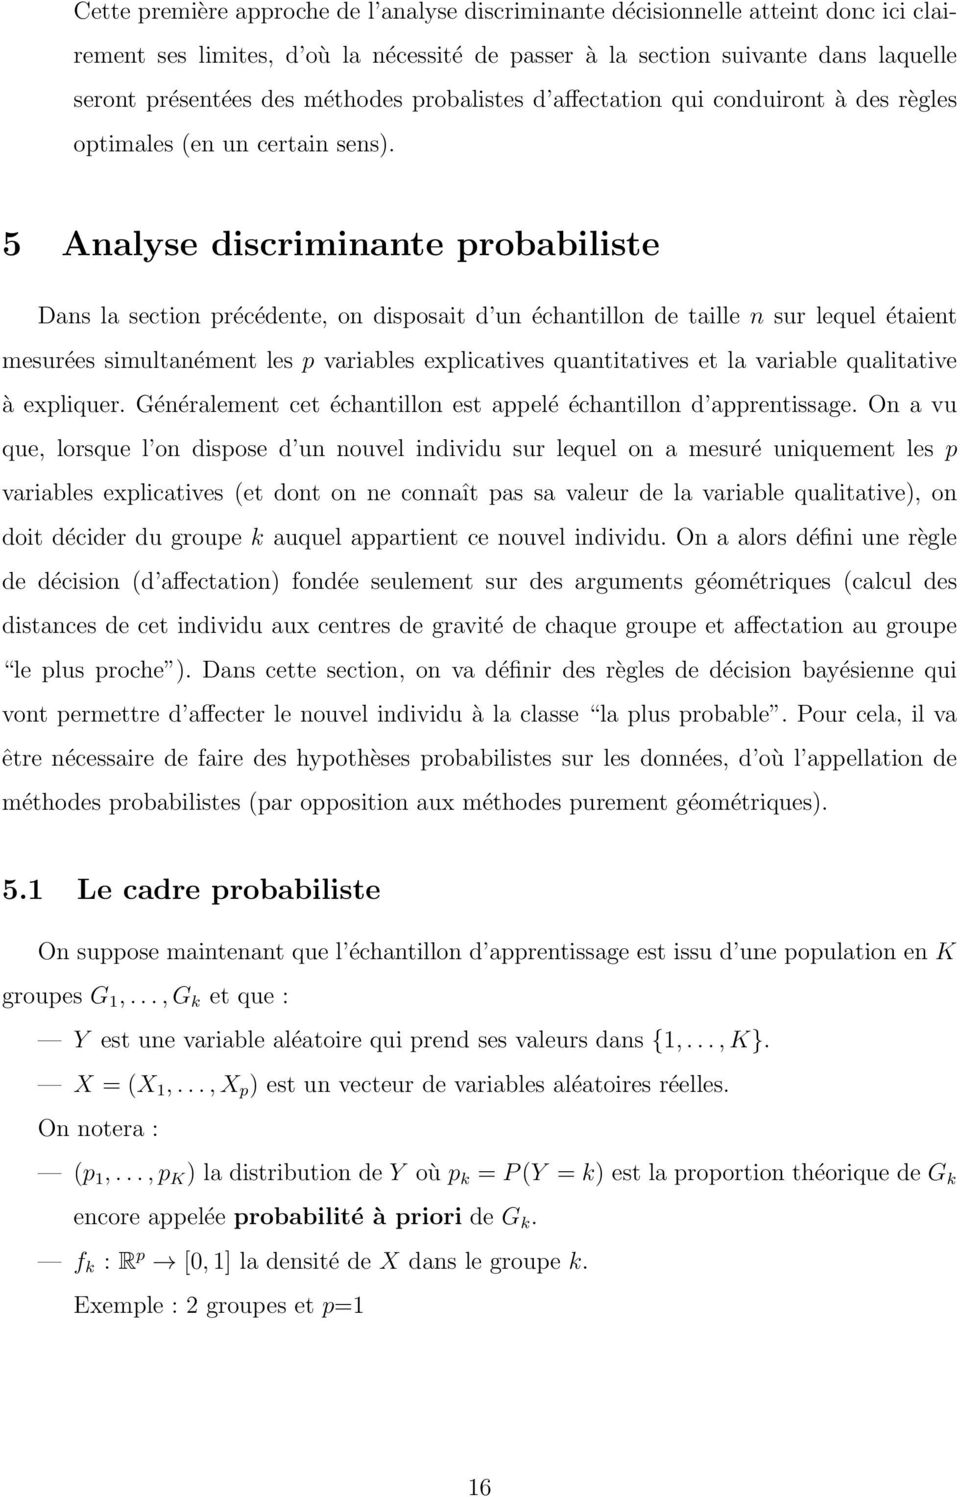 5 Aalyse discrimiate probabiliste Das la sectio précédete, o disposait d u échatillo de taille sur lequel étaiet mesurées simultaémet les p variables explicatives quatitatives et la variable